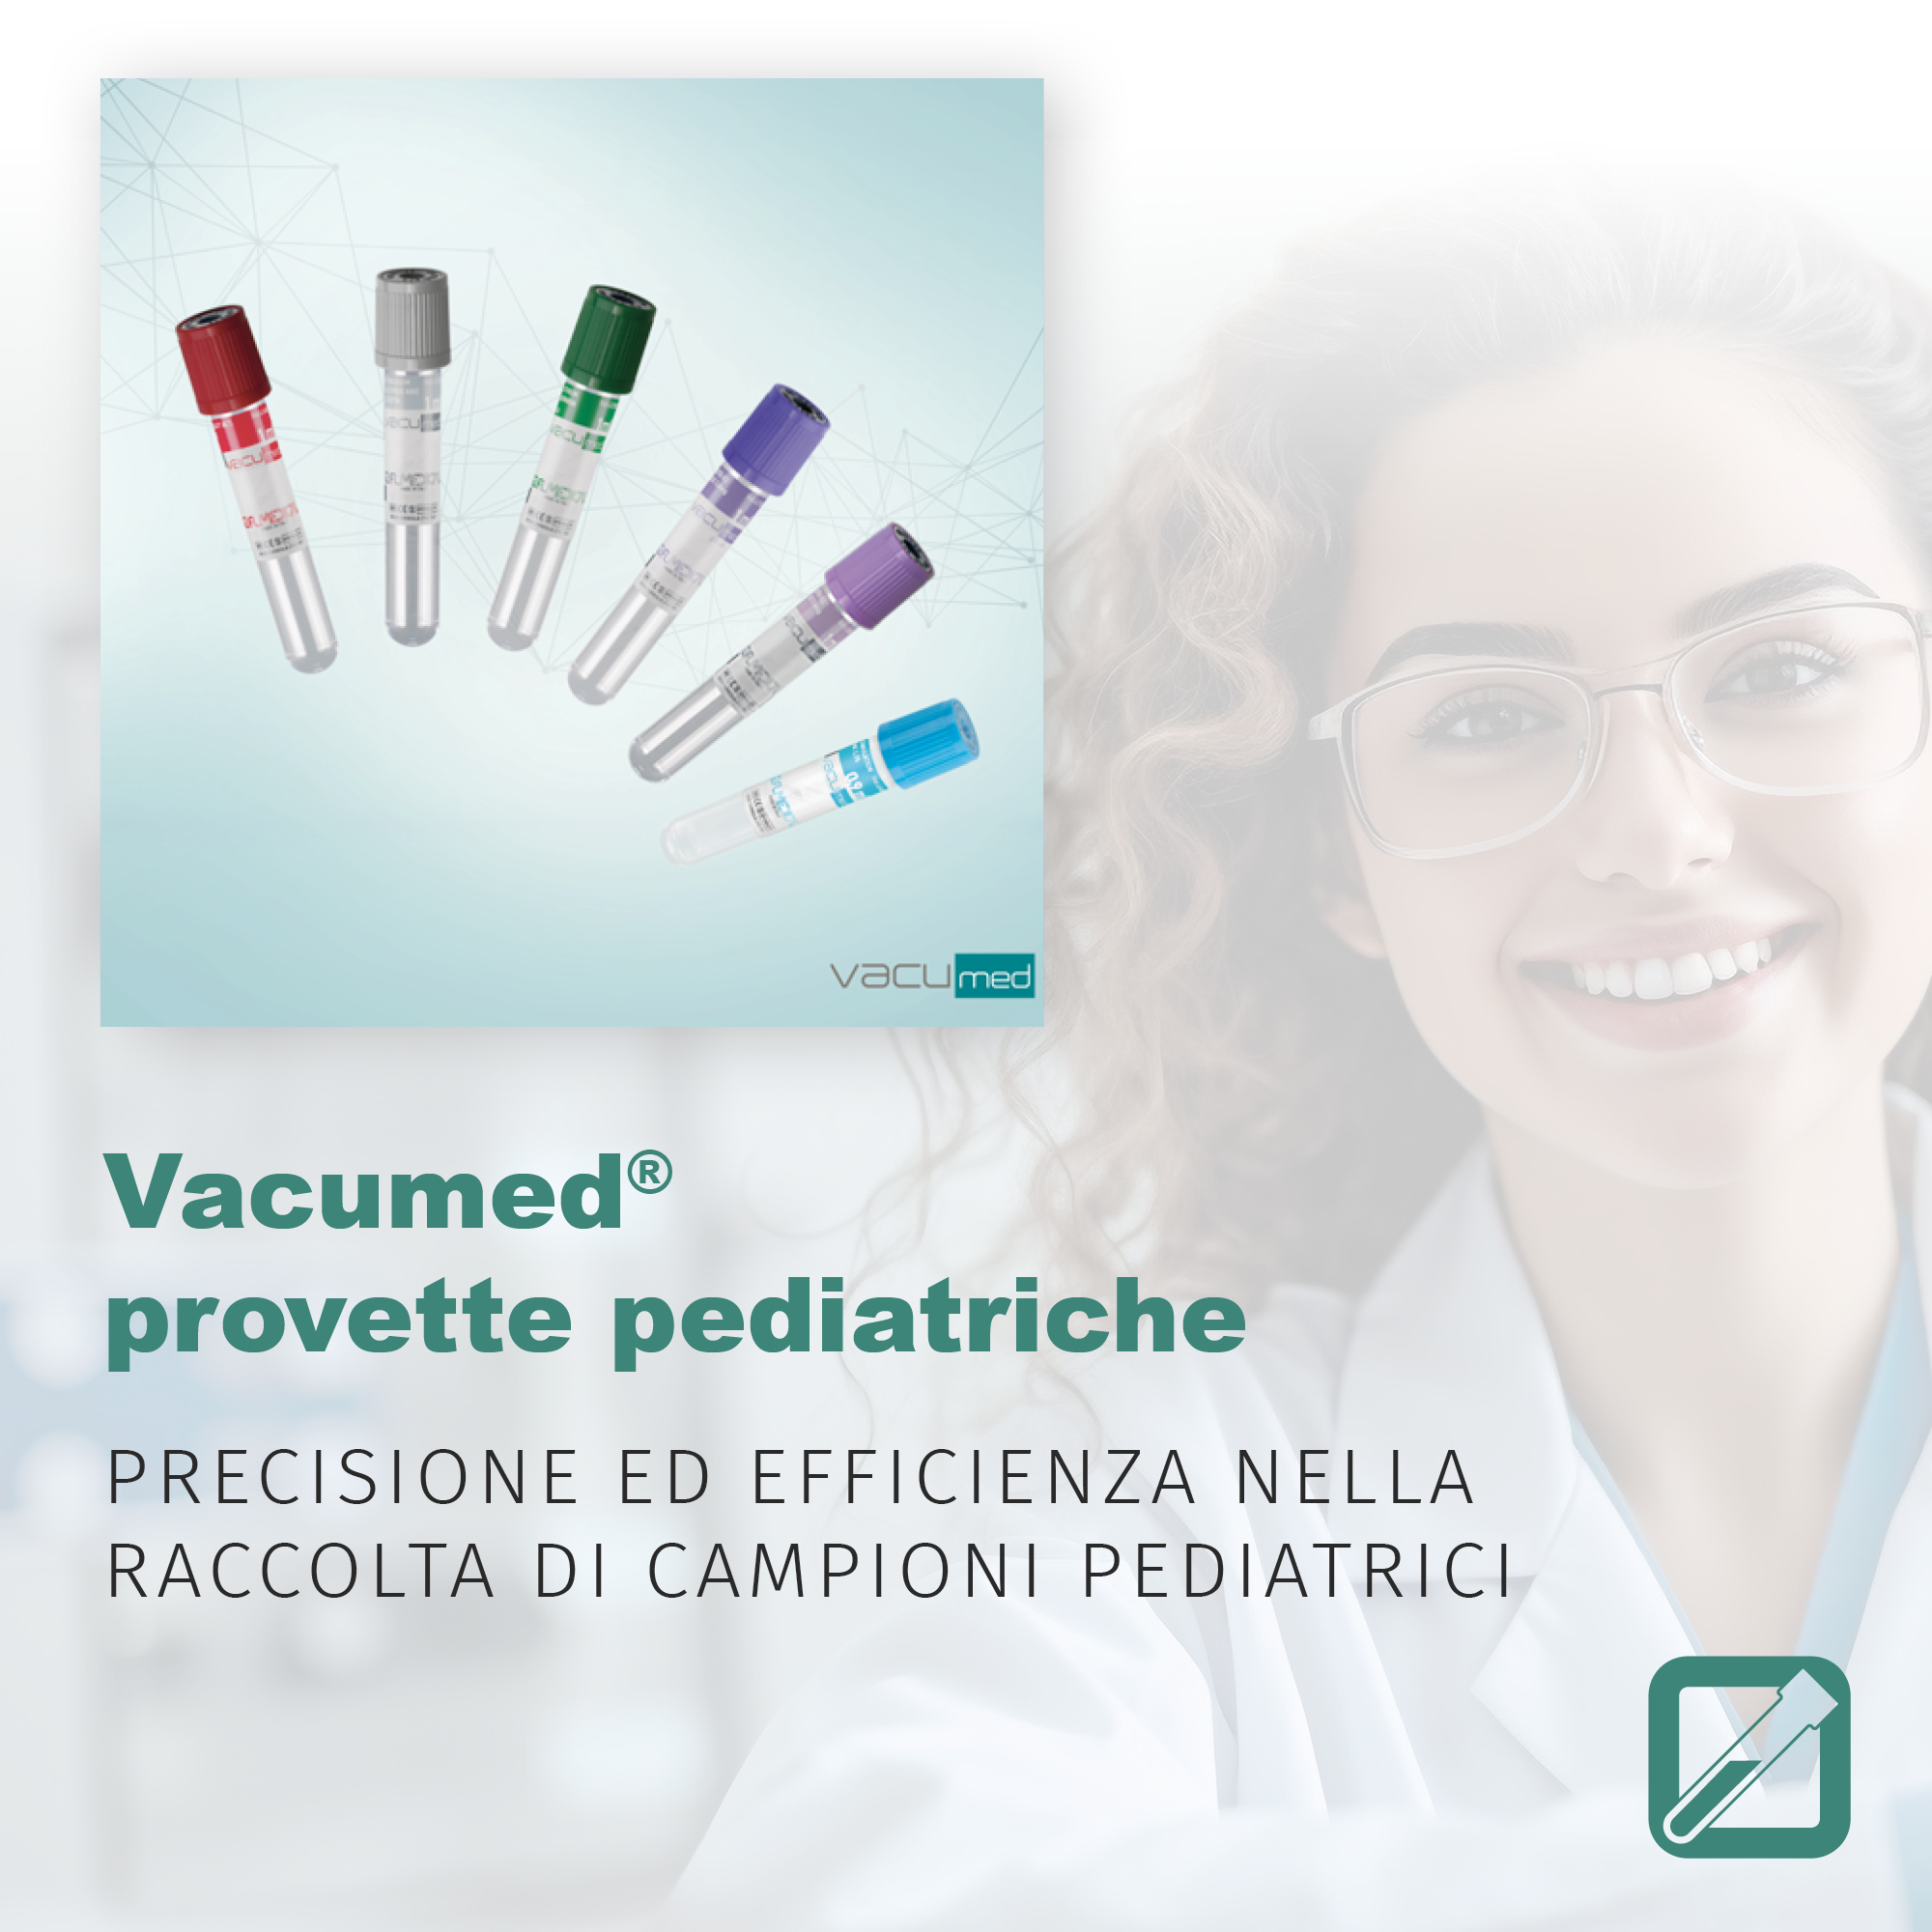 Vacumed® provette pediatriche: precisione ed efficienza nella raccolta dei campioni pediatrici